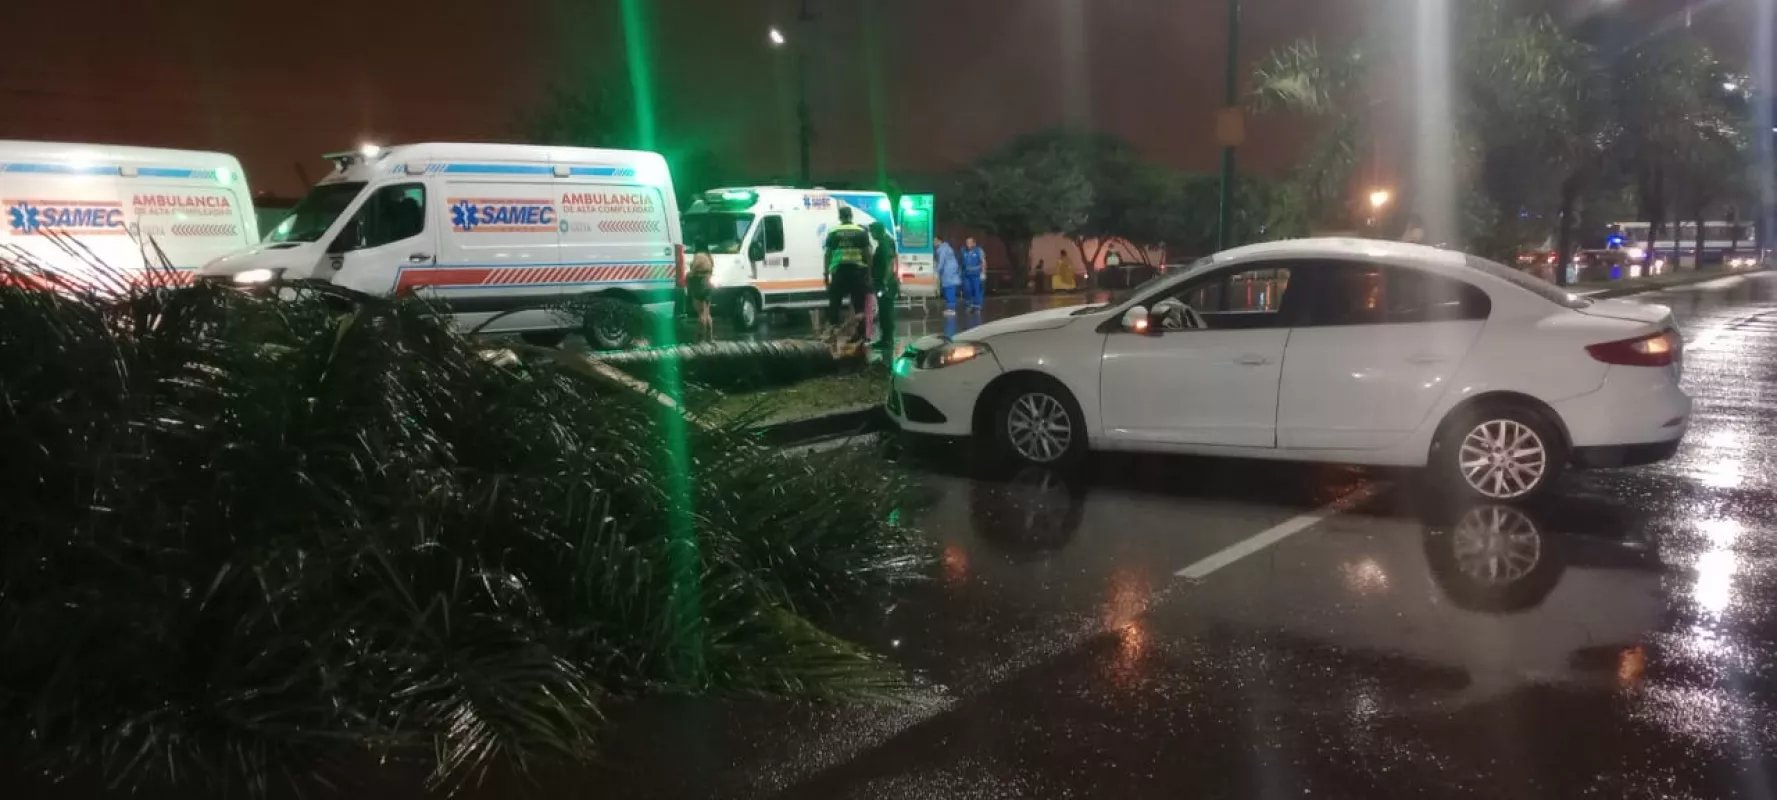 Un conductor alcoholizado chocó a 10 personas en Salta: tres muertos y dos heridos